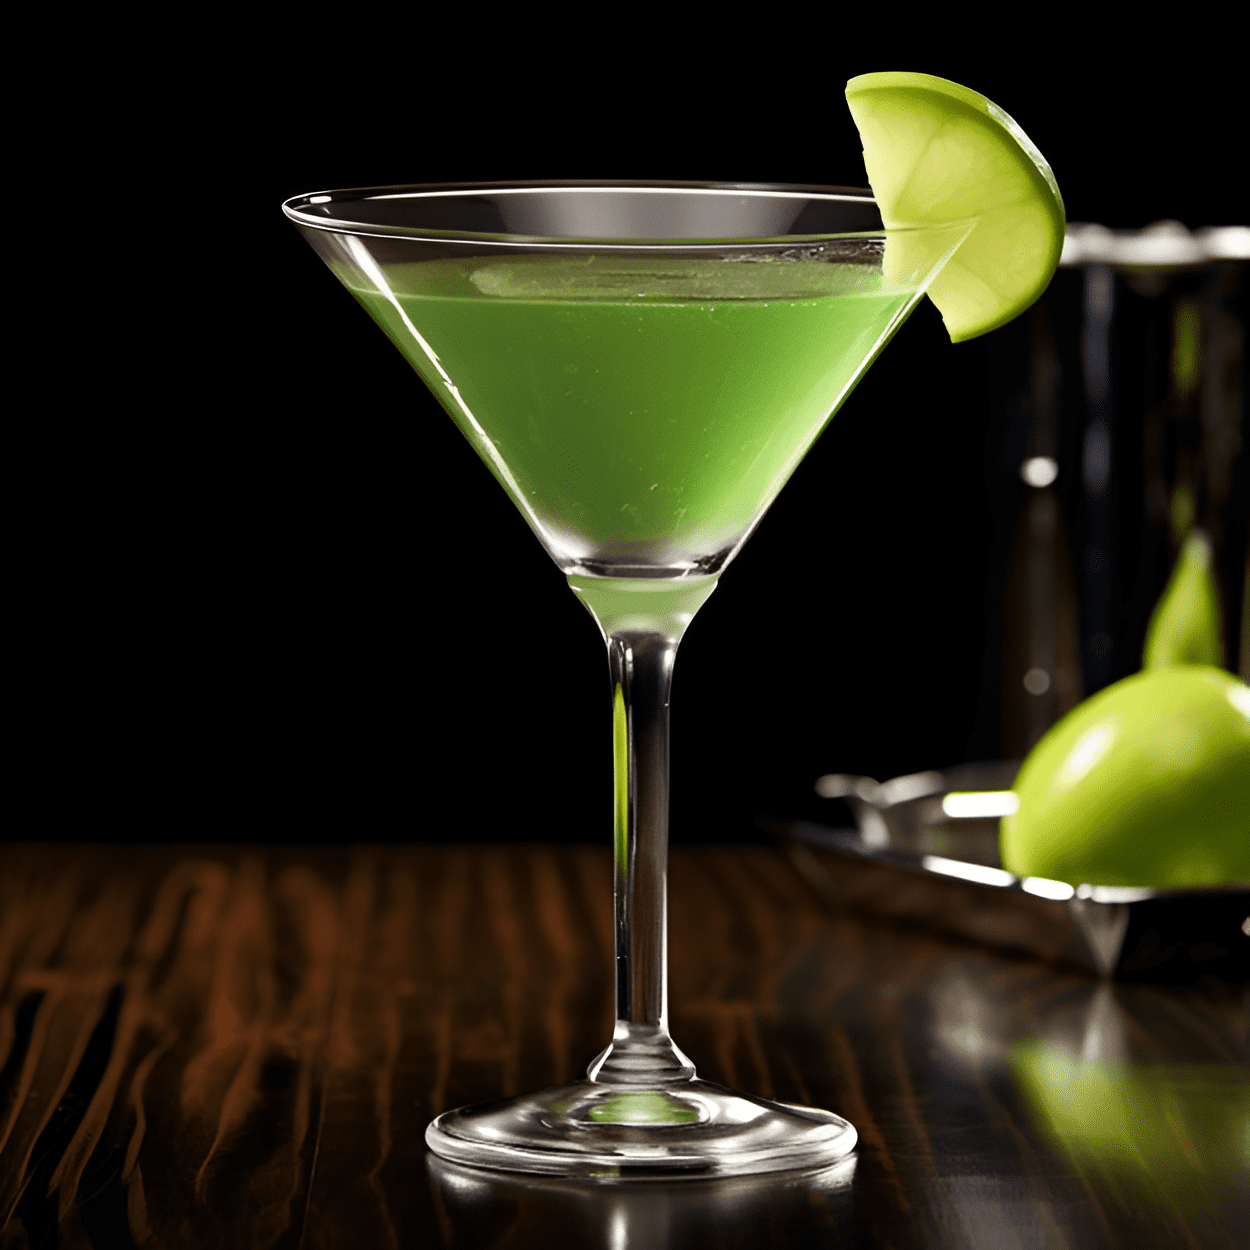 Apple Martini Cóctel Receta - El Apple Martini tiene un sabor dulce y ácido, con un sabor a manzana crujiente y refrescante. Está bien equilibrado, con una ligera acidez de la manzana y un acabado suave y aterciopelado del vodka.